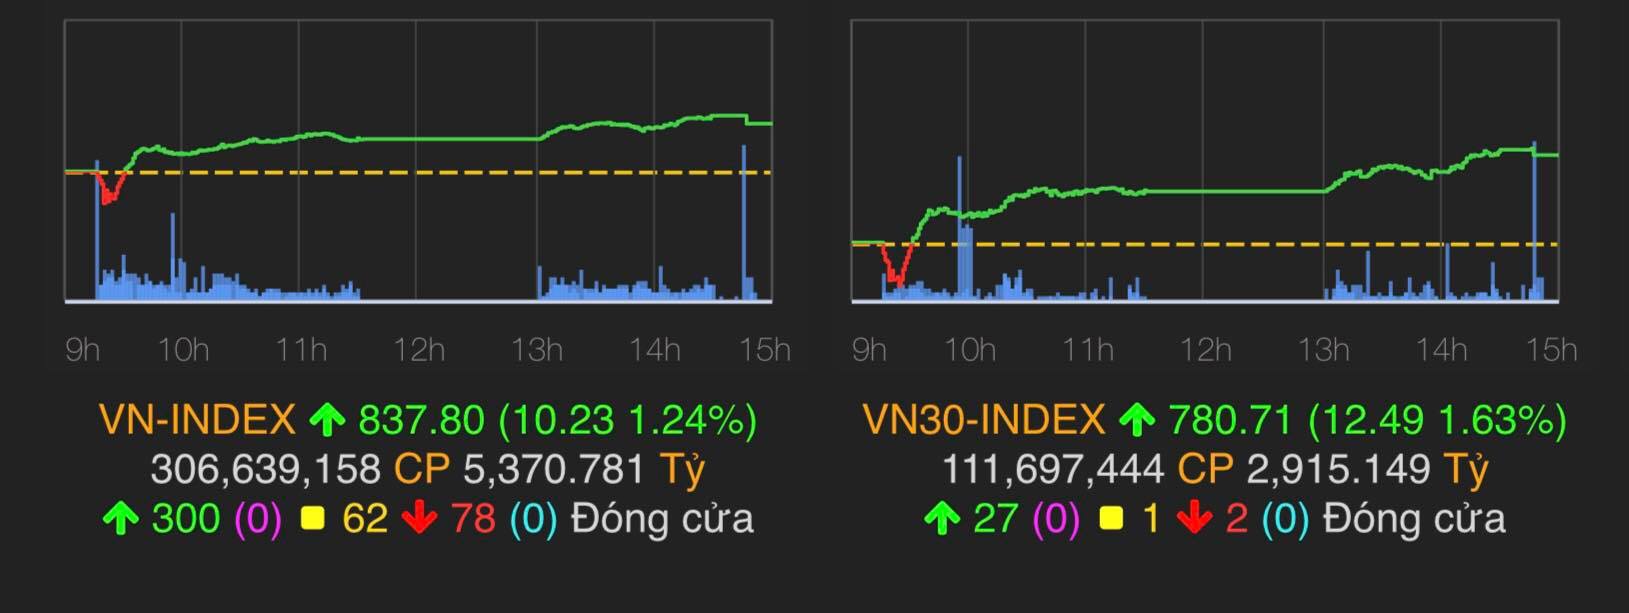 VN-Index tăng 10,23 điểm (tương đương 1,24%) lên mốc 837,8 điểm.